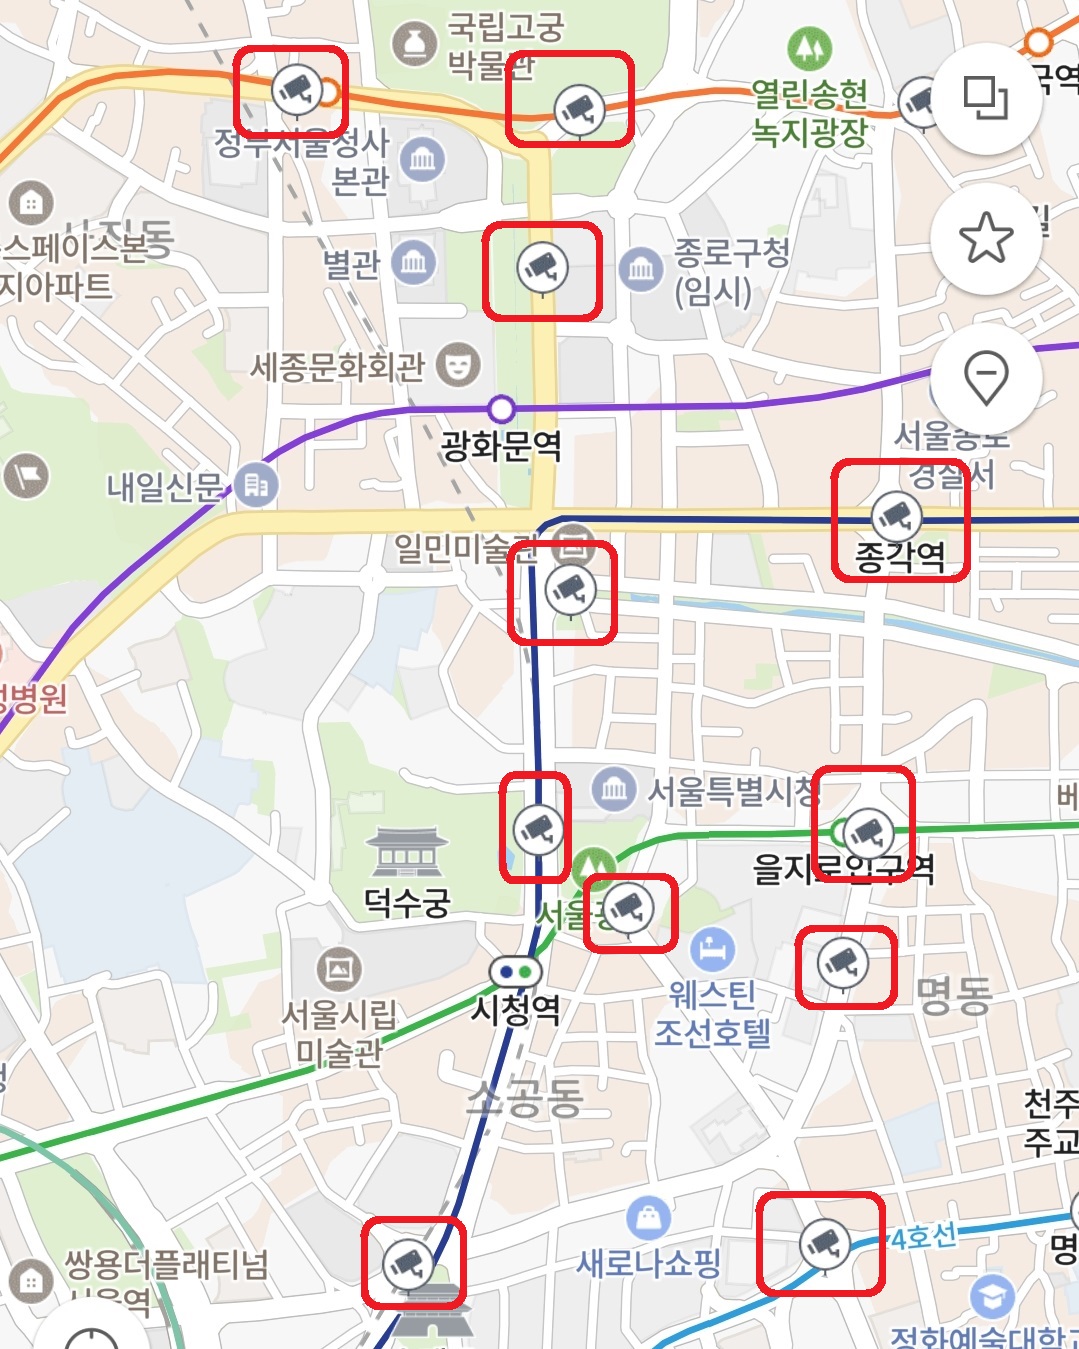 네이버 지도 전국 실시간 CCTV 보는 방법 5